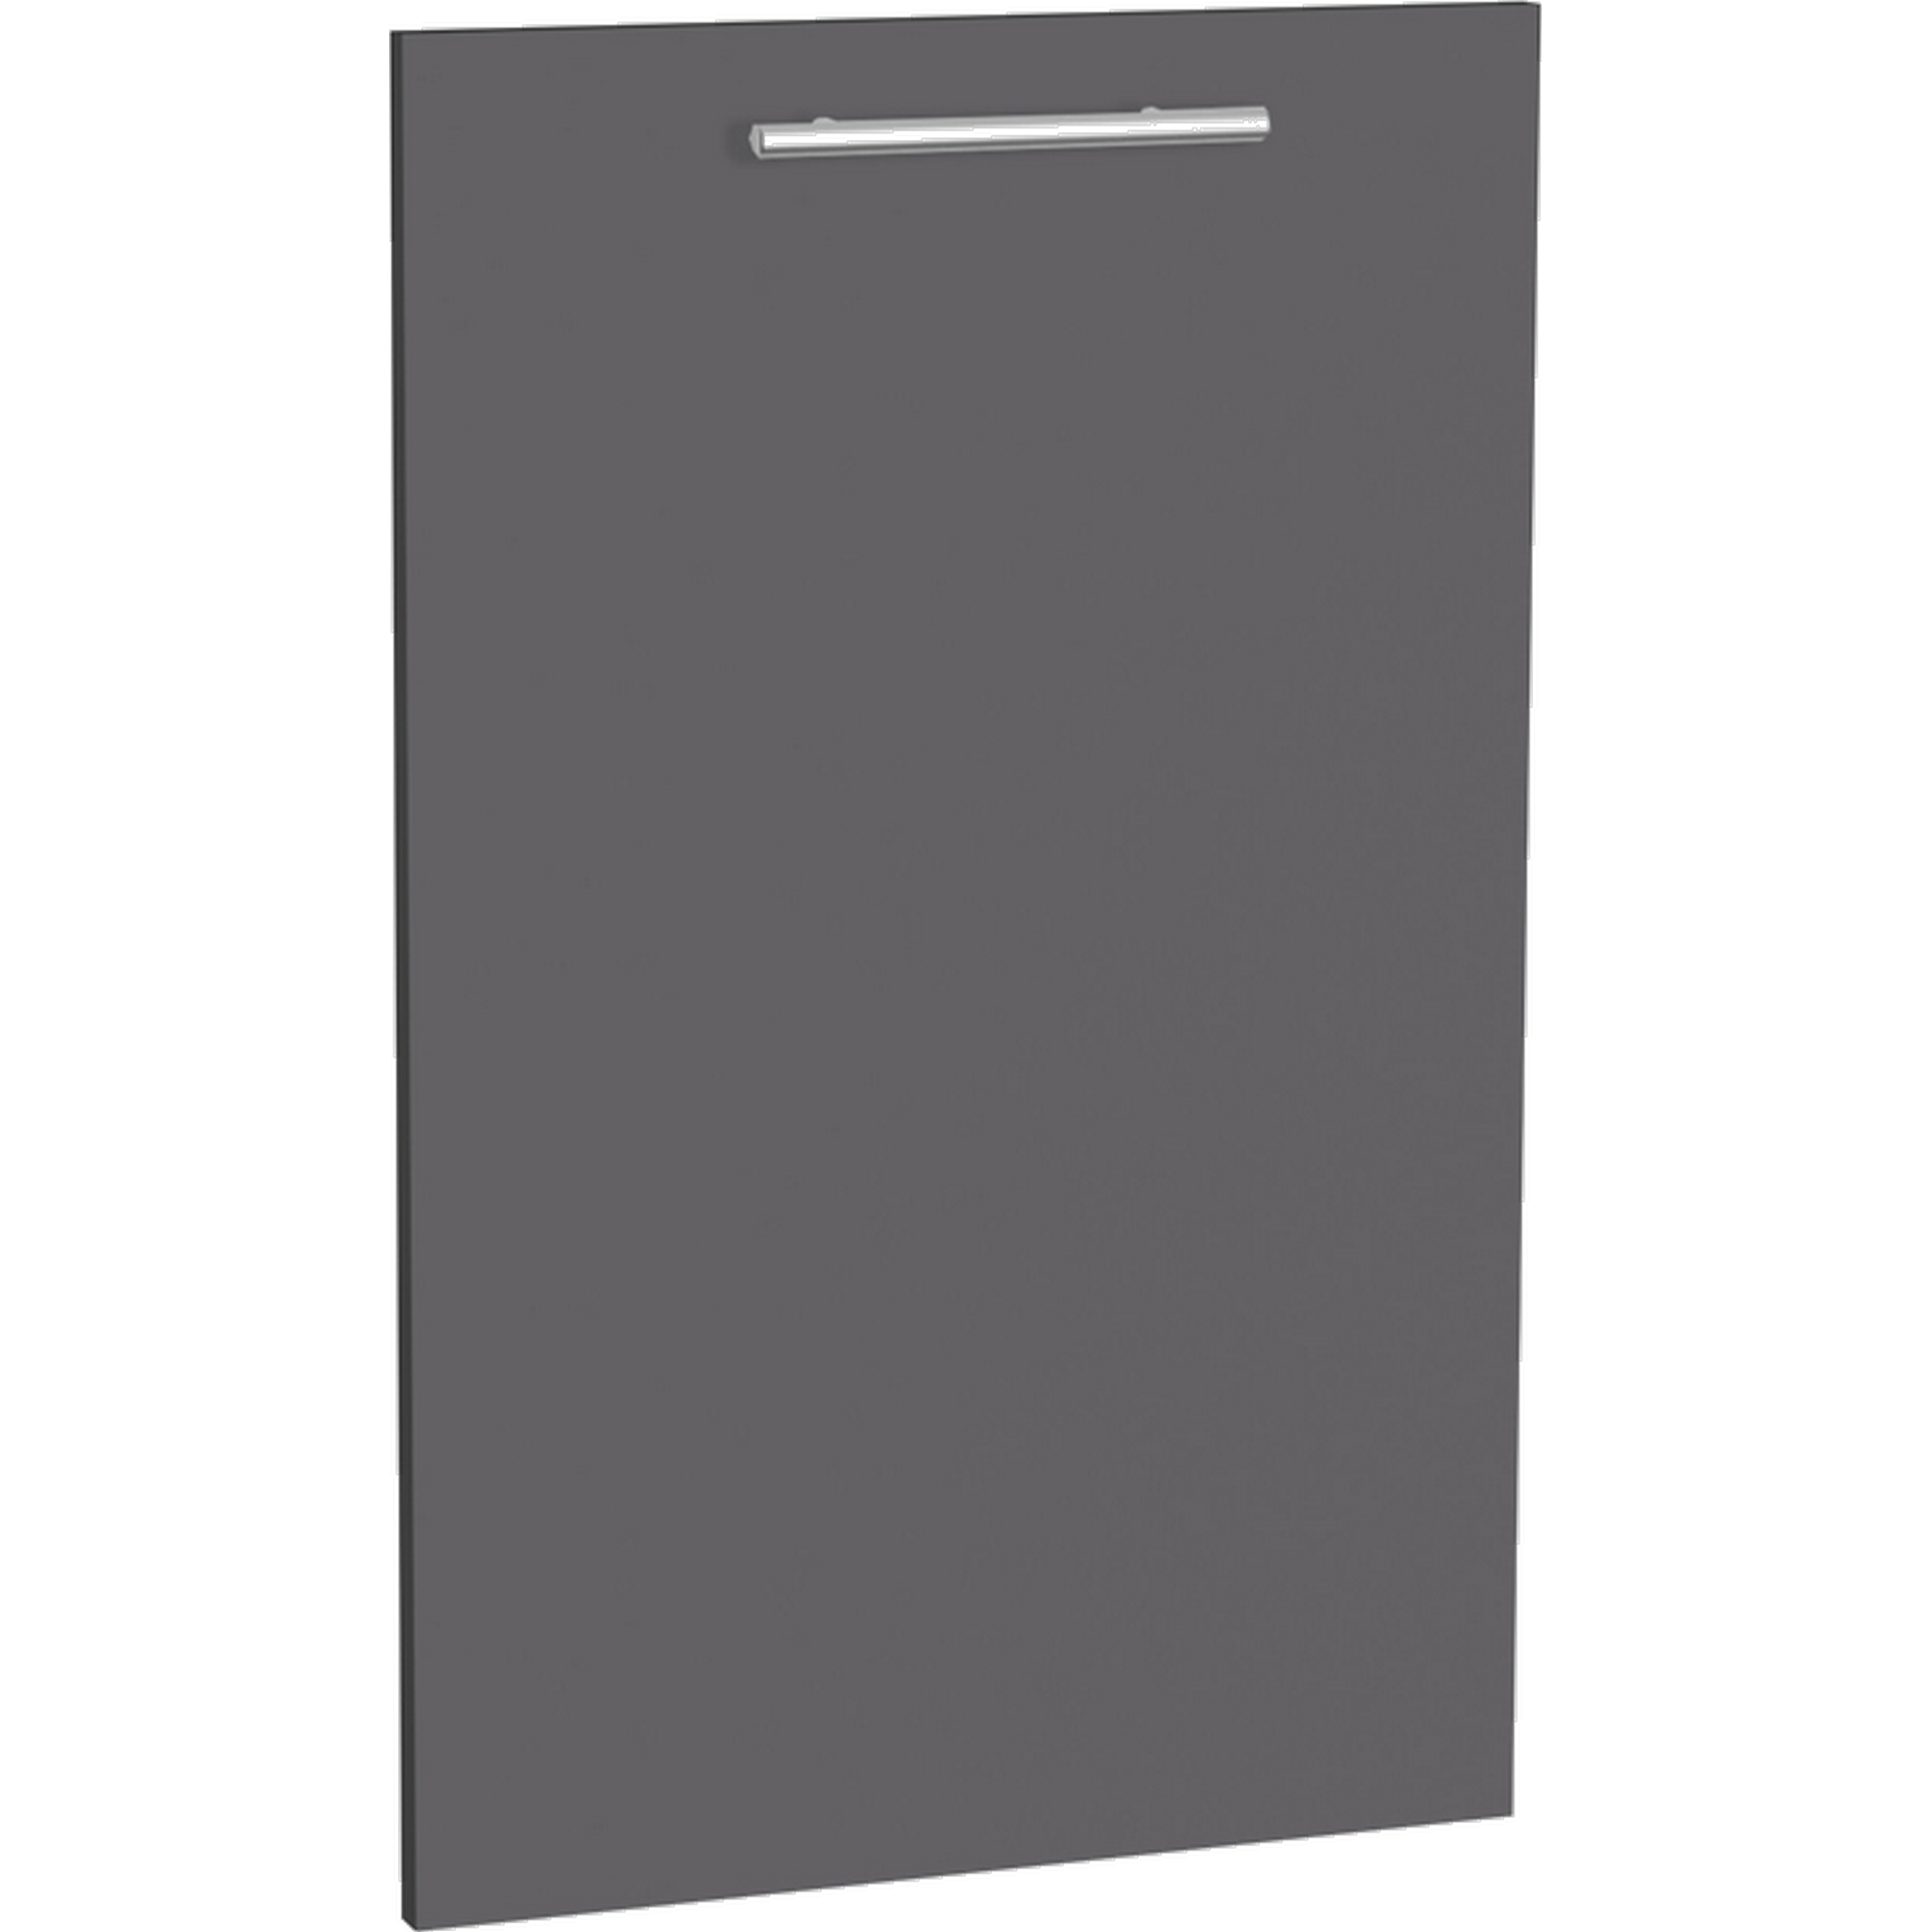 Tür für vollintegrierten Geschirrspüler 'Optikomfort Ingvar420' anthrazit matt 44,6 x 70 x 1,6 cm + product picture